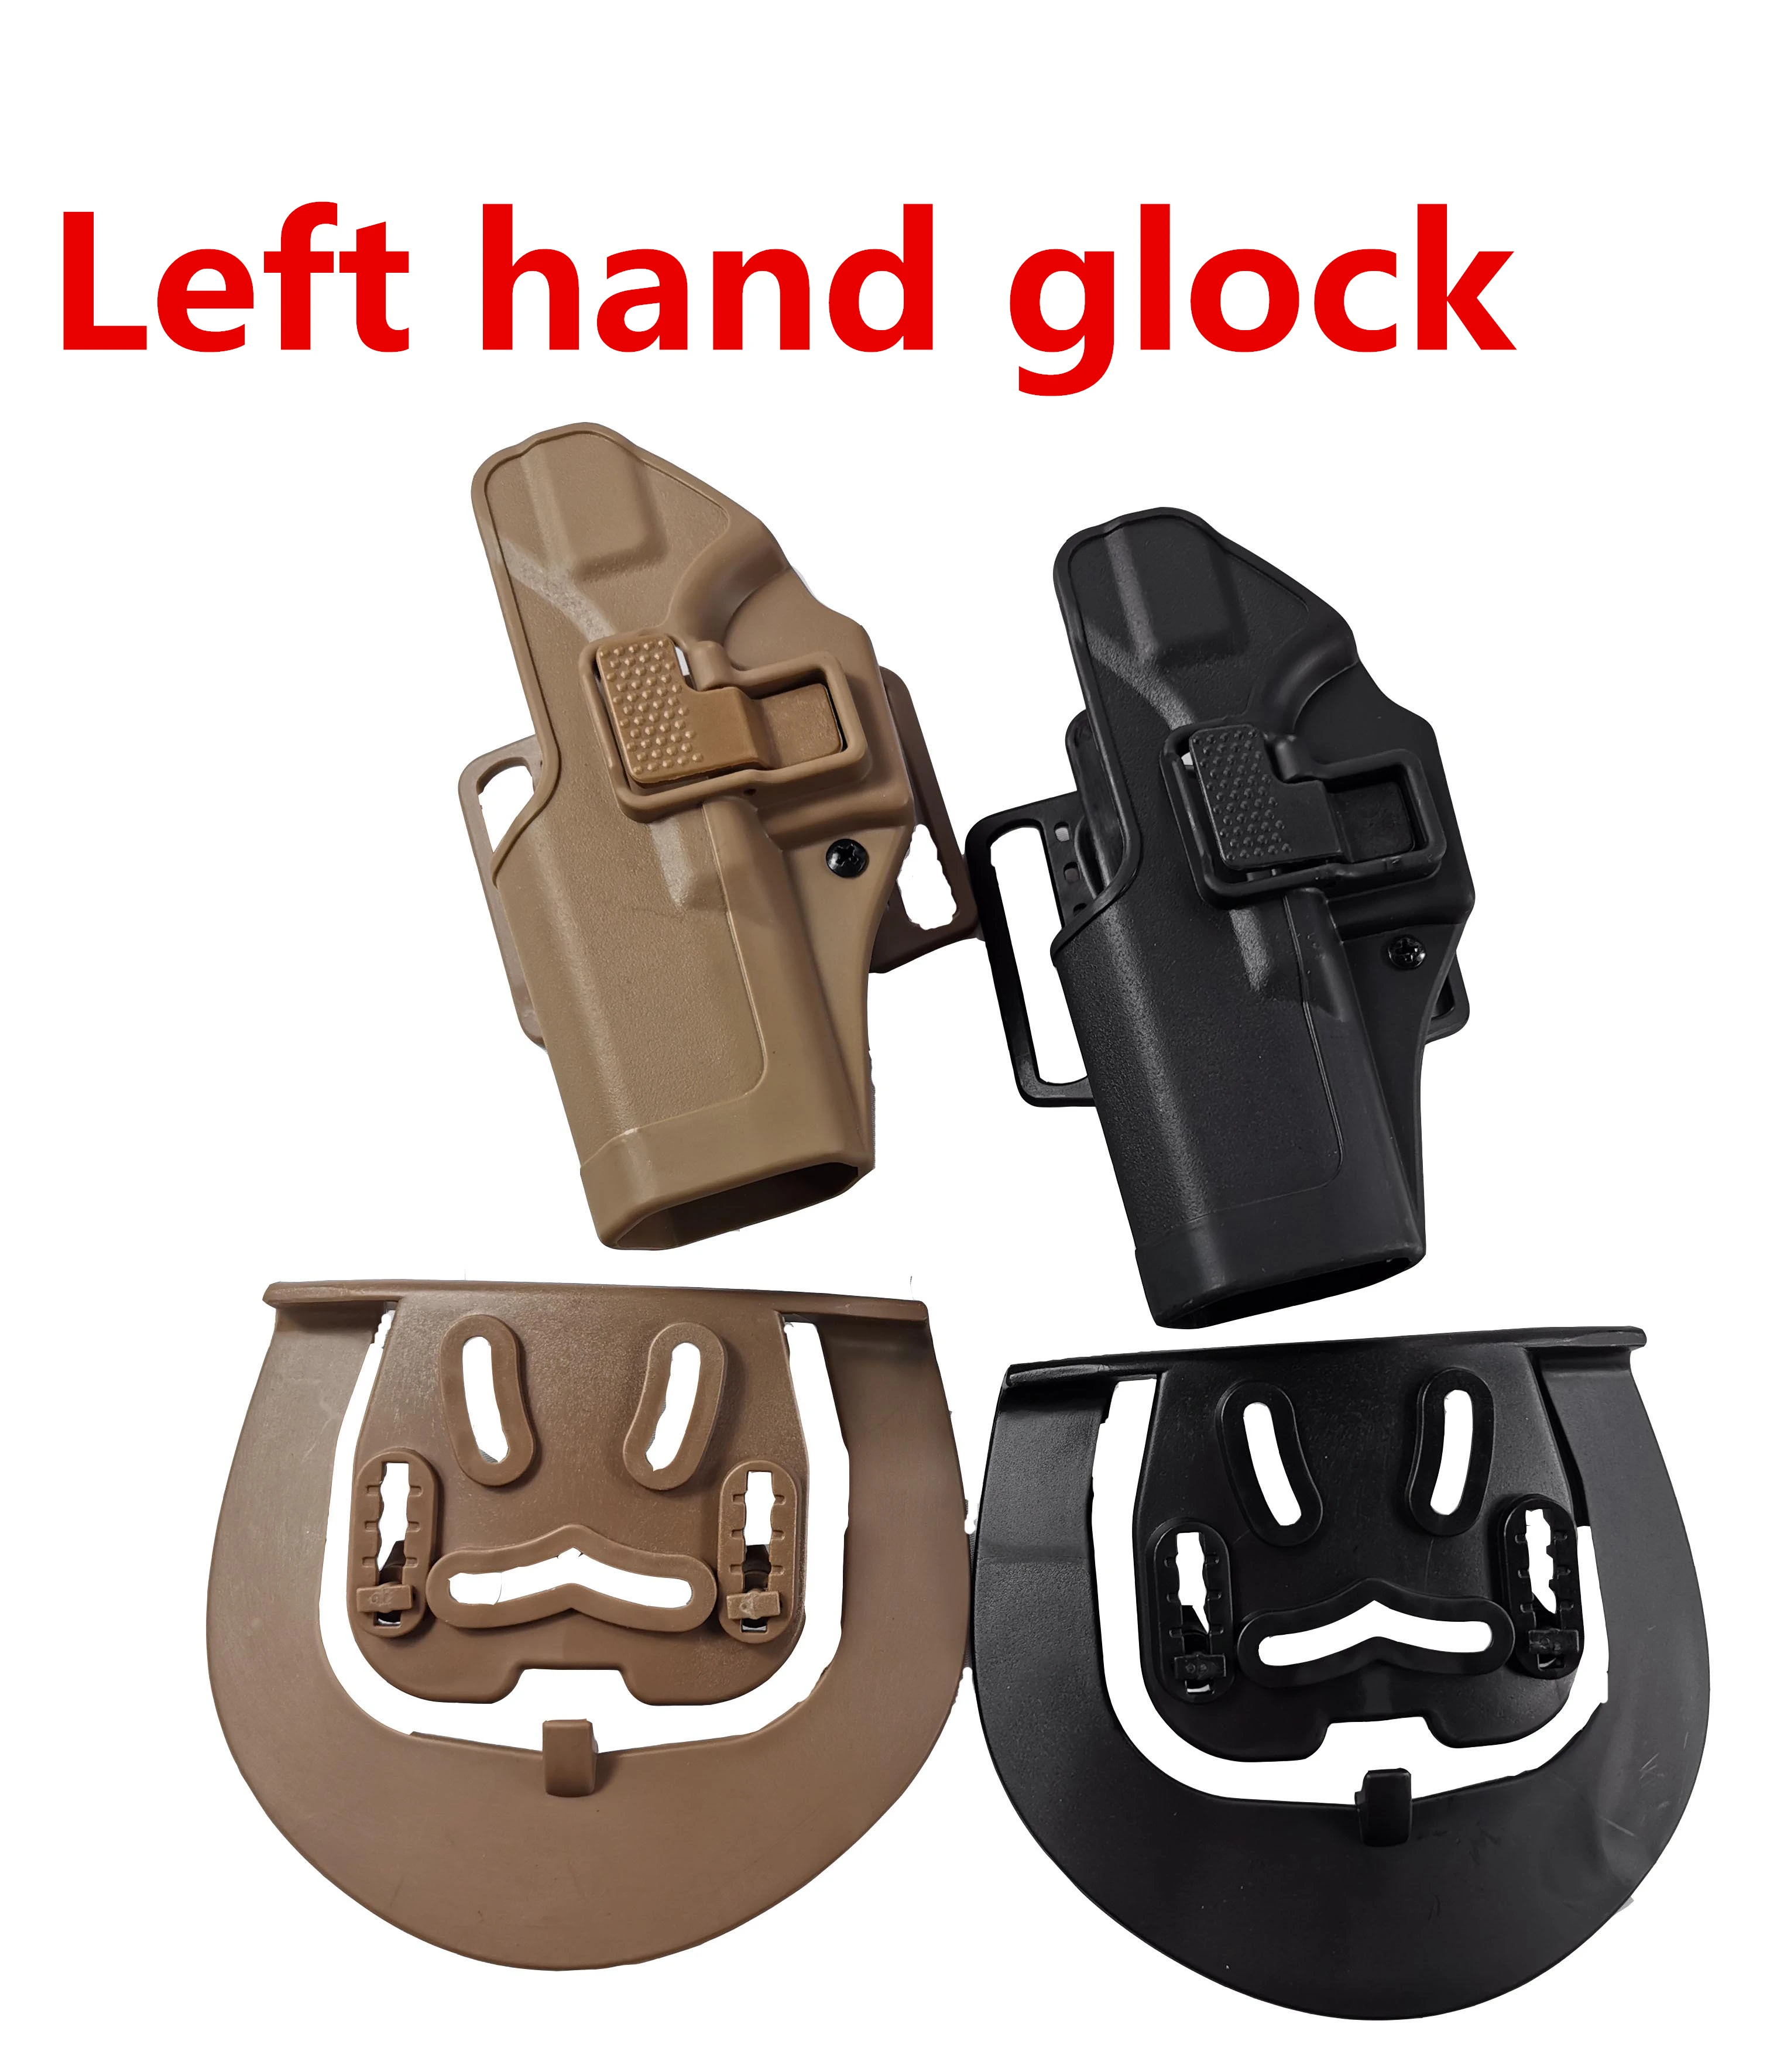 

Тактическая кобура Glock для правой и левой руки для Glock 17 19 22 23 31 32, ремень для пистолета, кобура для пистолета, аксессуары для страйкбола и охот...